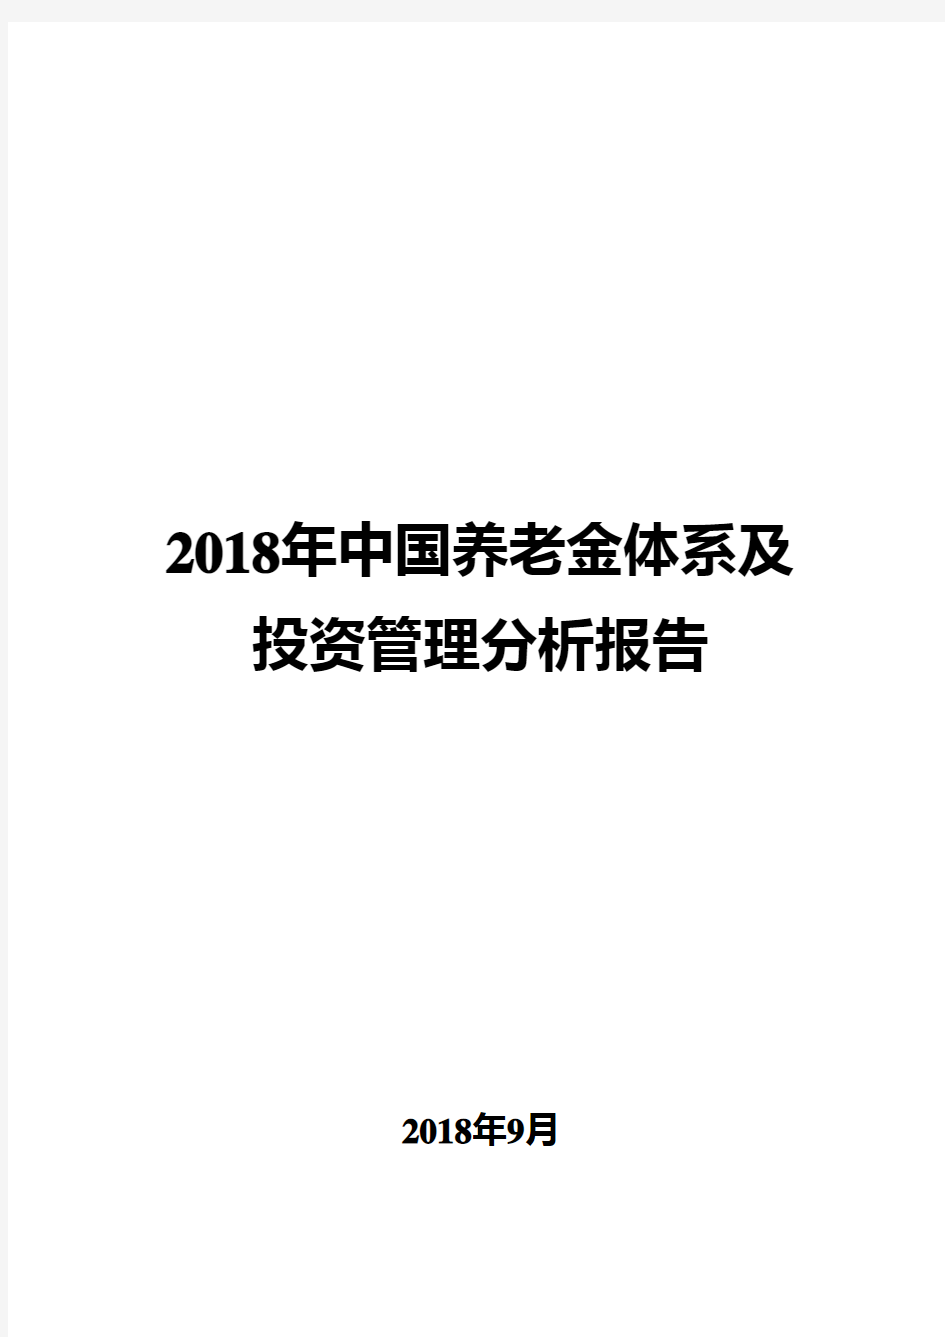 2018年中国养老金体系及投资管理现状分析报告